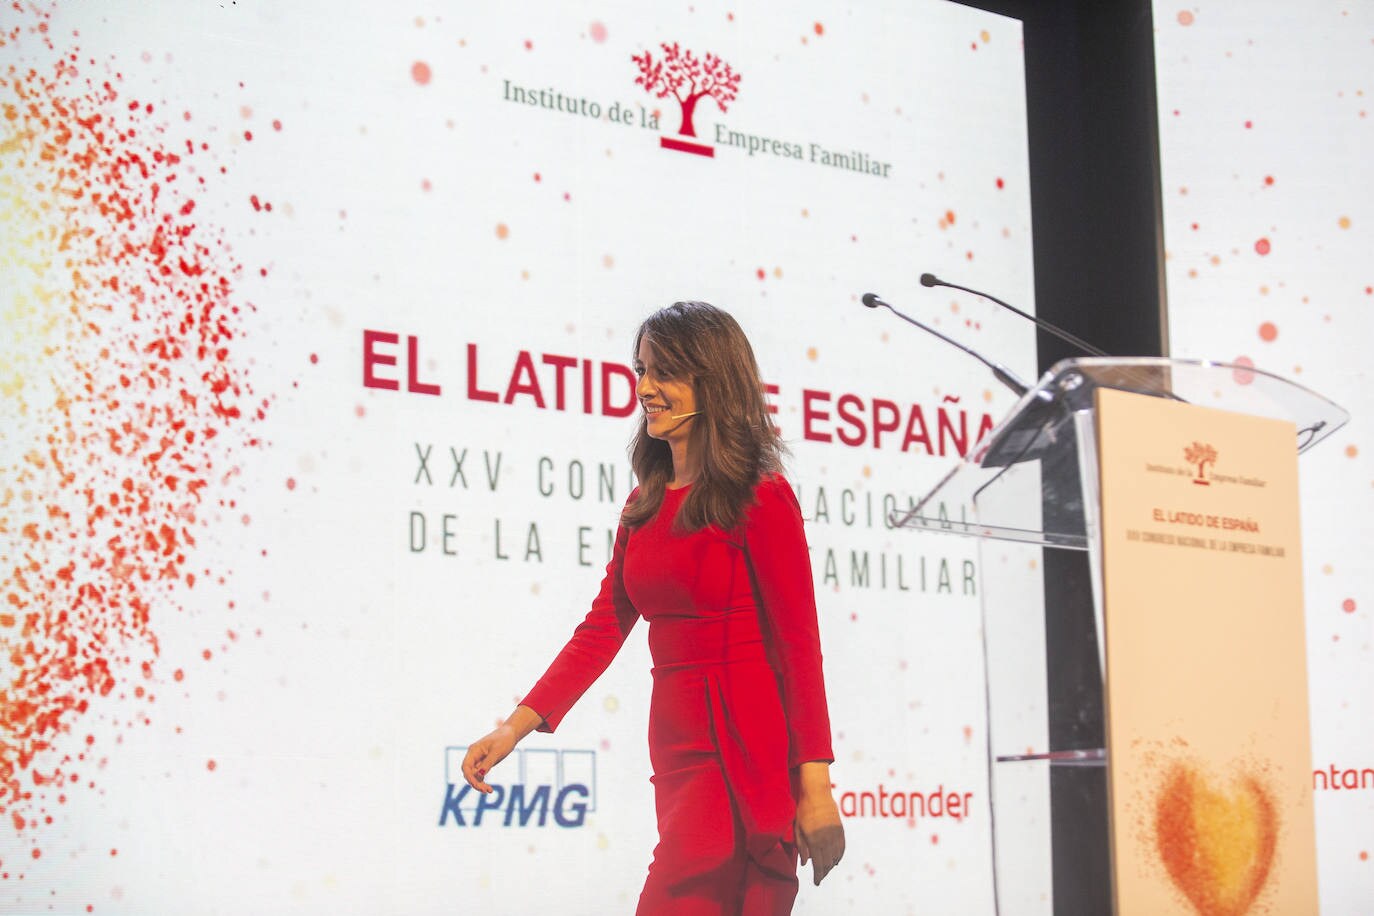 Fotos: Segunda jornada del Congreso de la Empresa Familiar en Cáceres